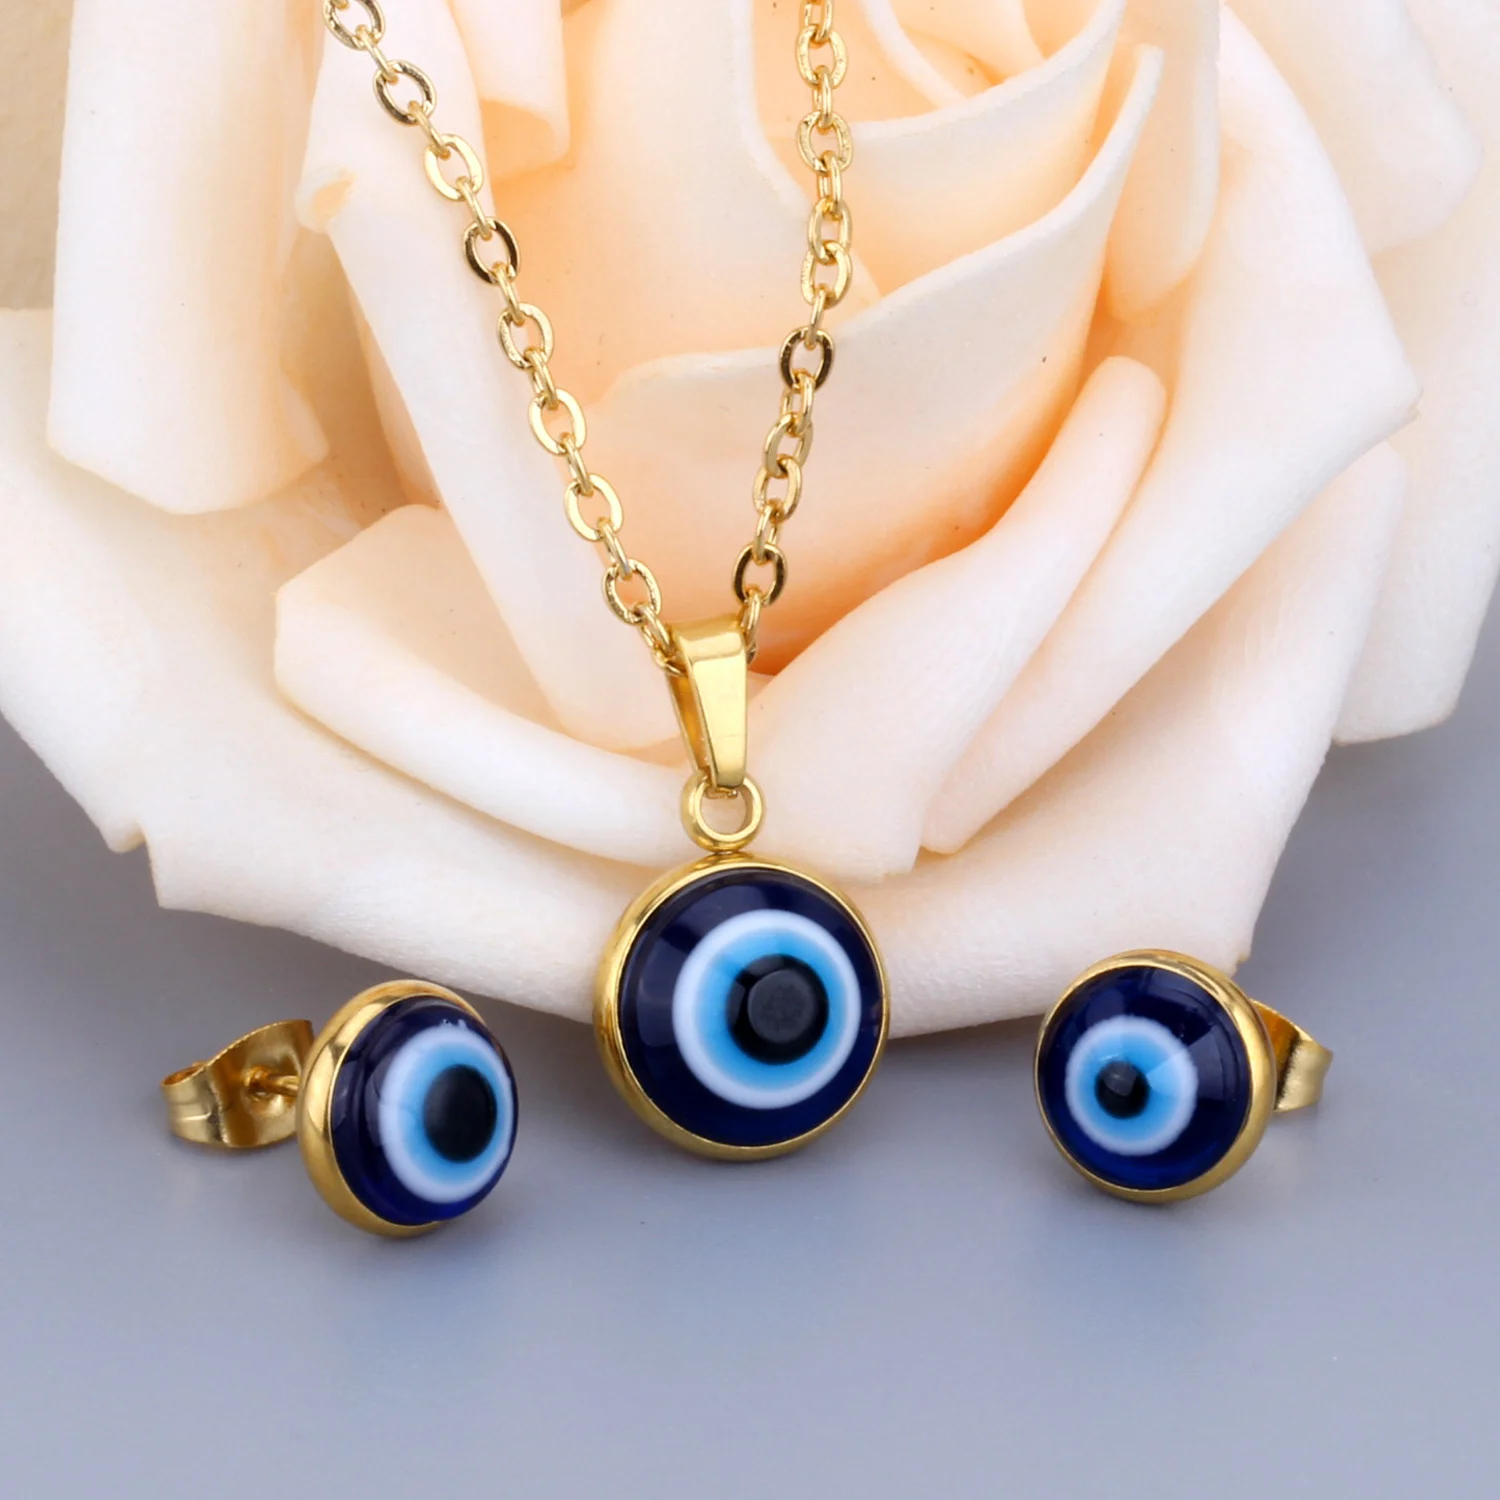 Роскошные голубые глаза из нержавеющей стали классические ювелирные комплекты ювелирные изделия золото/серебро цвет кулон ожерелье серьги наборы для женщин партии